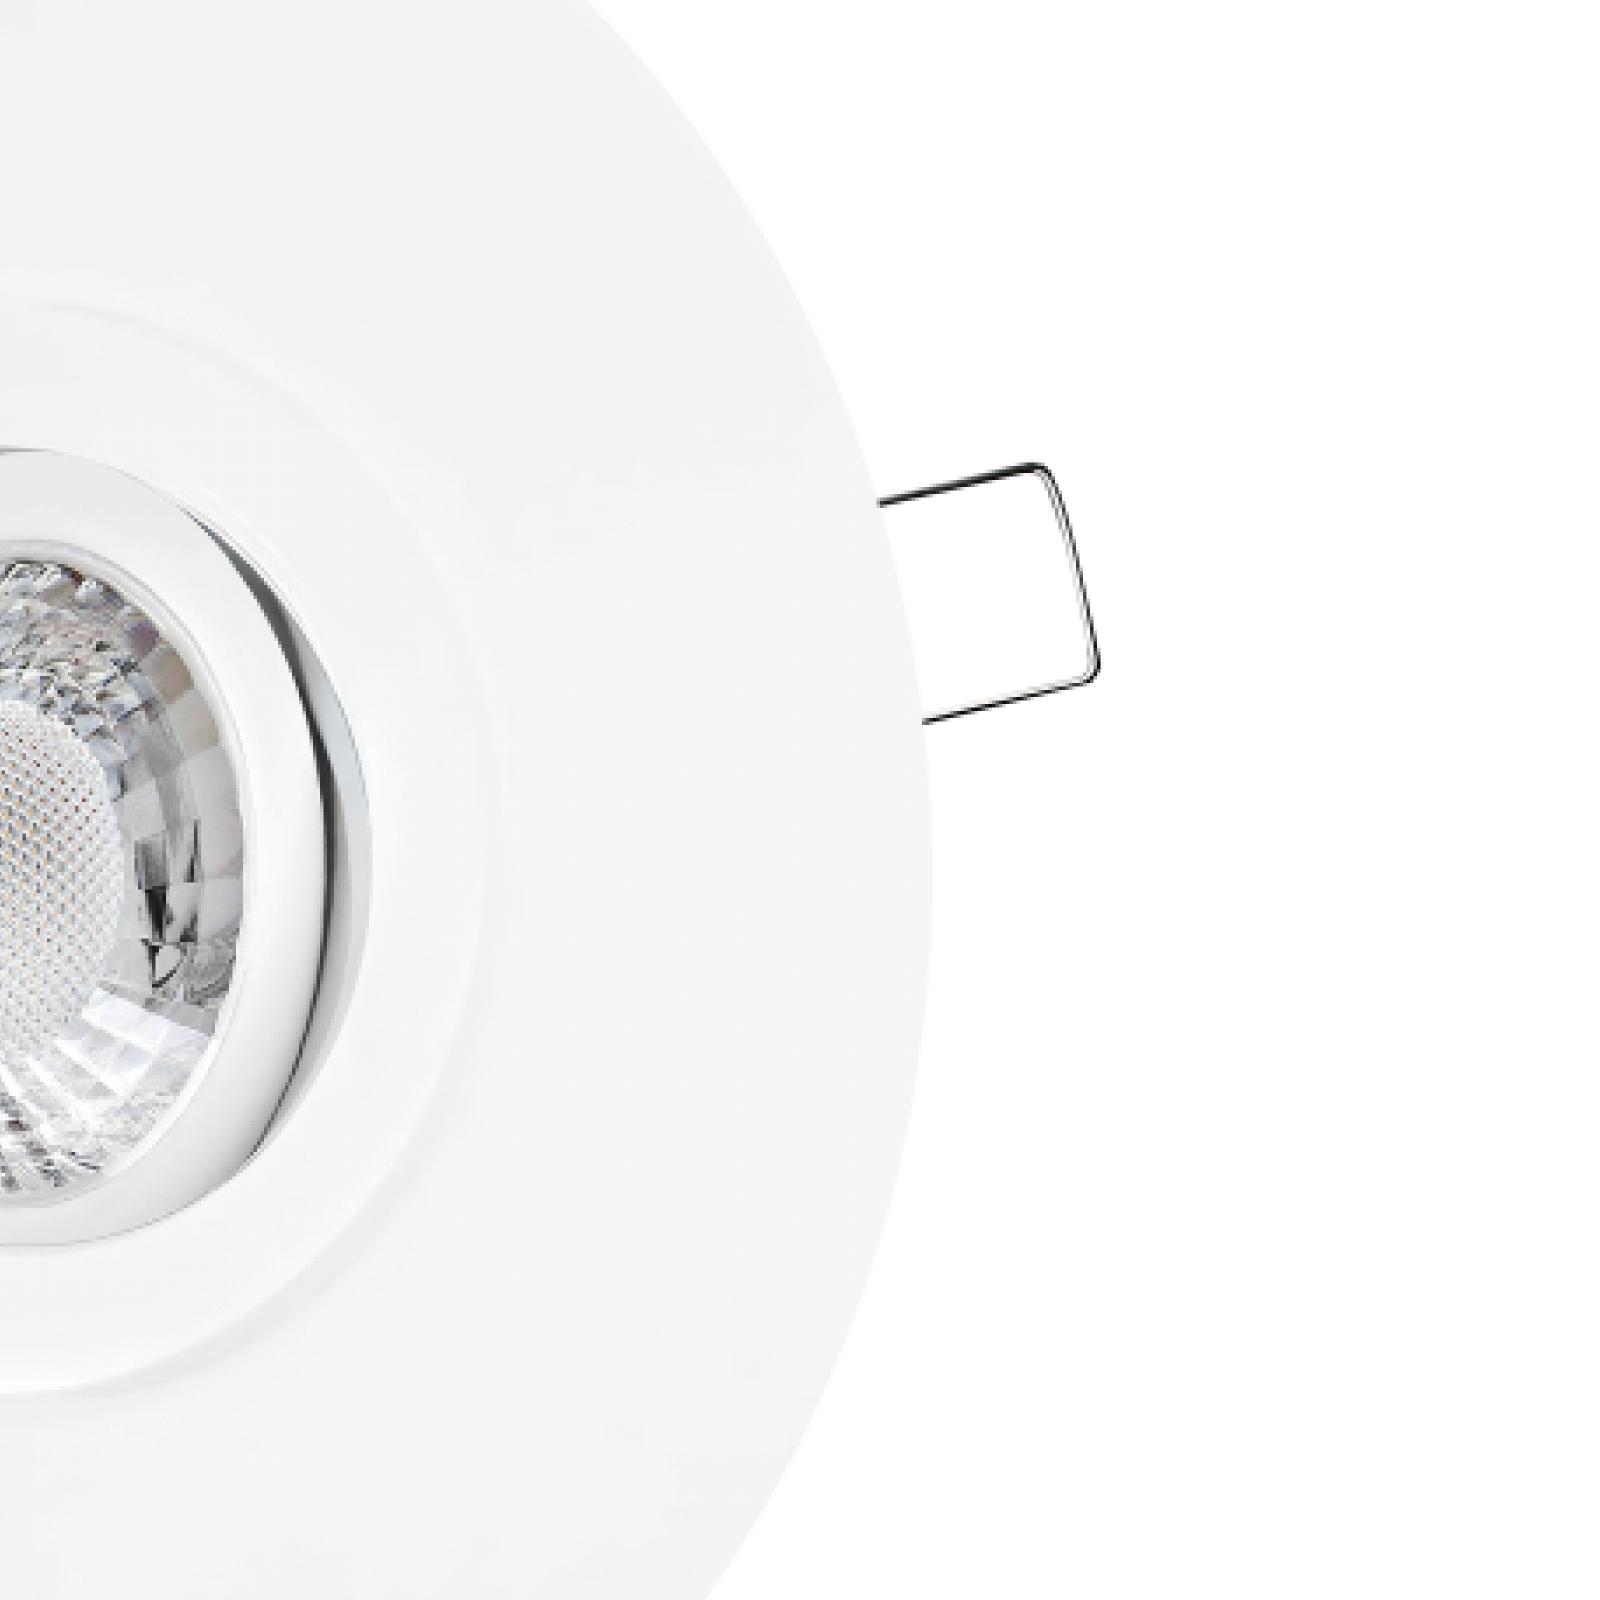 LED Einbaustrahler mit Ausgleichsblende für große Lochausschnitte weiß | Rund | schwenkbar | Lochmaß Ø 68mm - 180mm | Einbautiefe 64mm | GU10 230V 